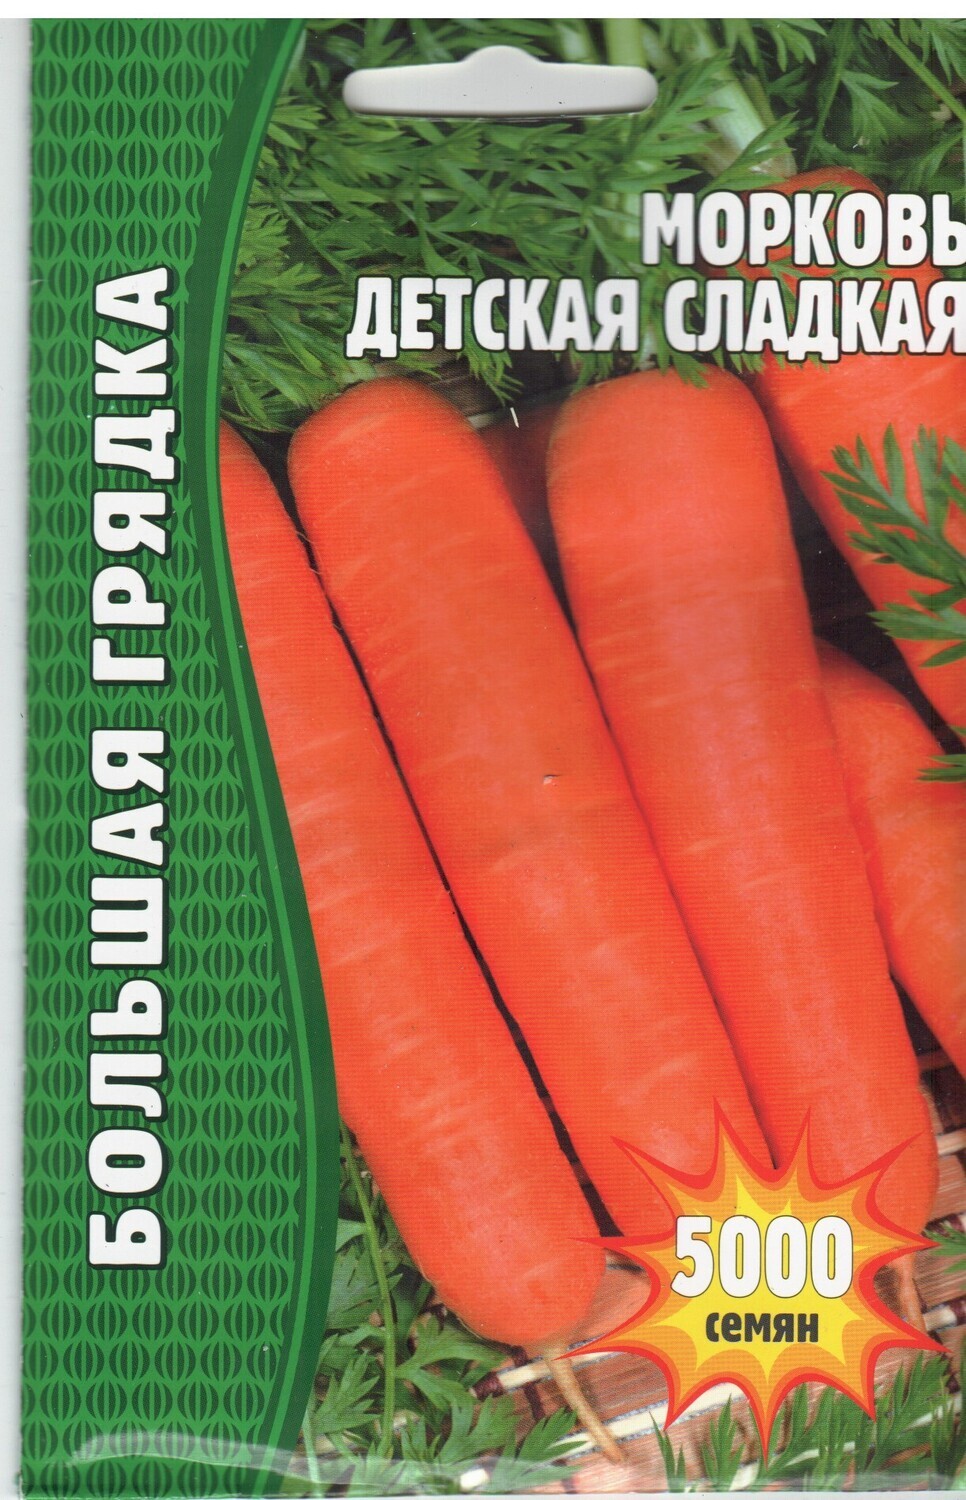 Морковь Детская сладкая (5000  семян)